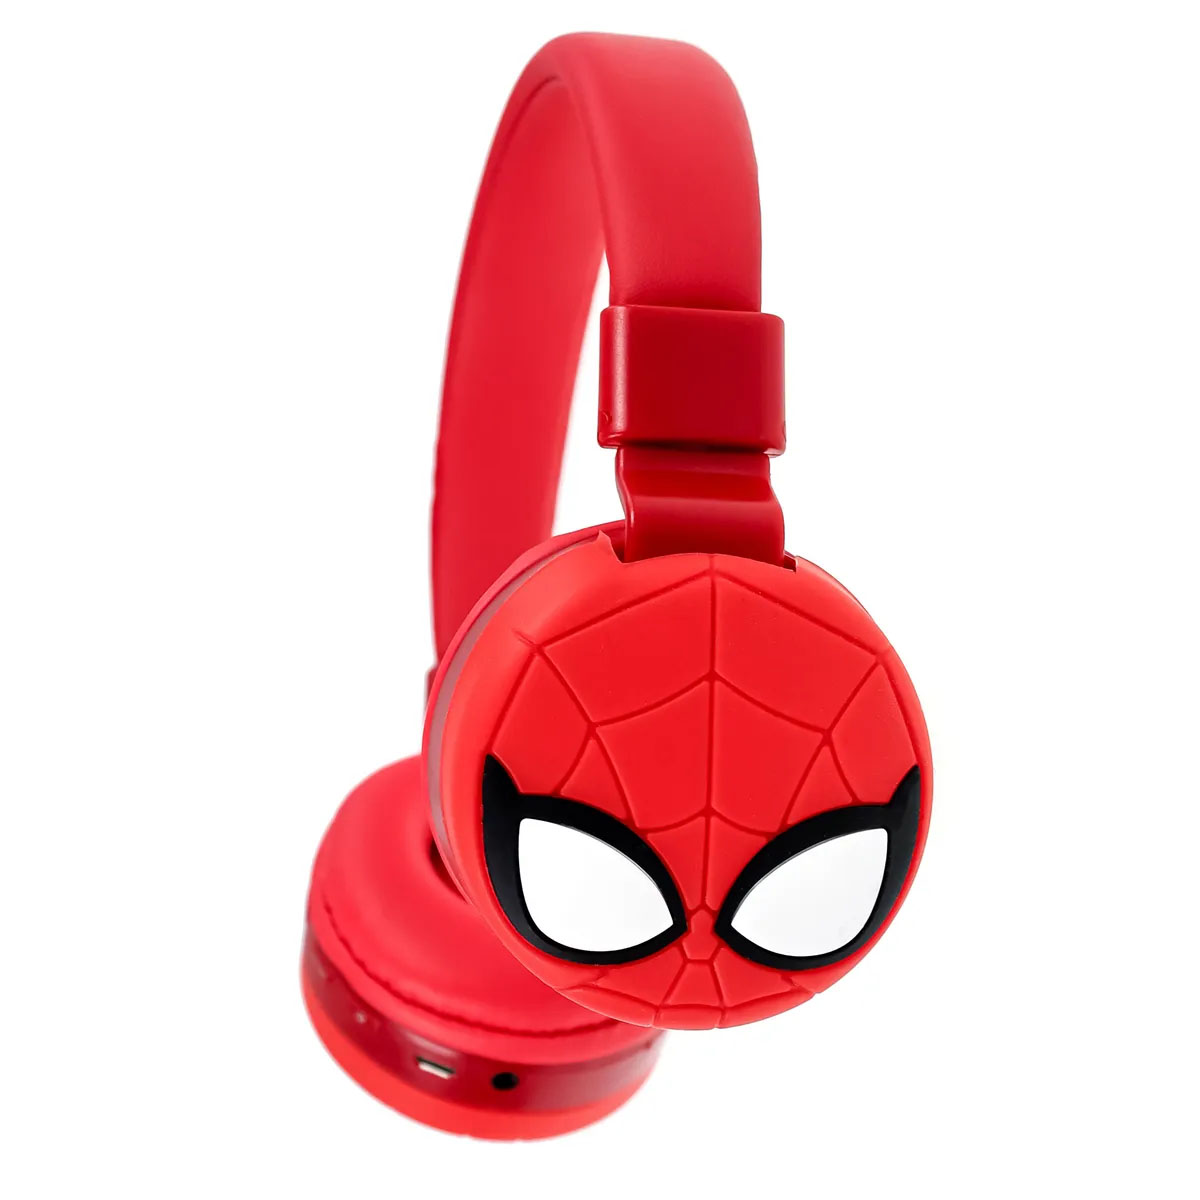 Гарнитура (наушники с микрофоном) беспроводная KR-9900, полноразмерная, рисунок Человек Паук, цвет красный